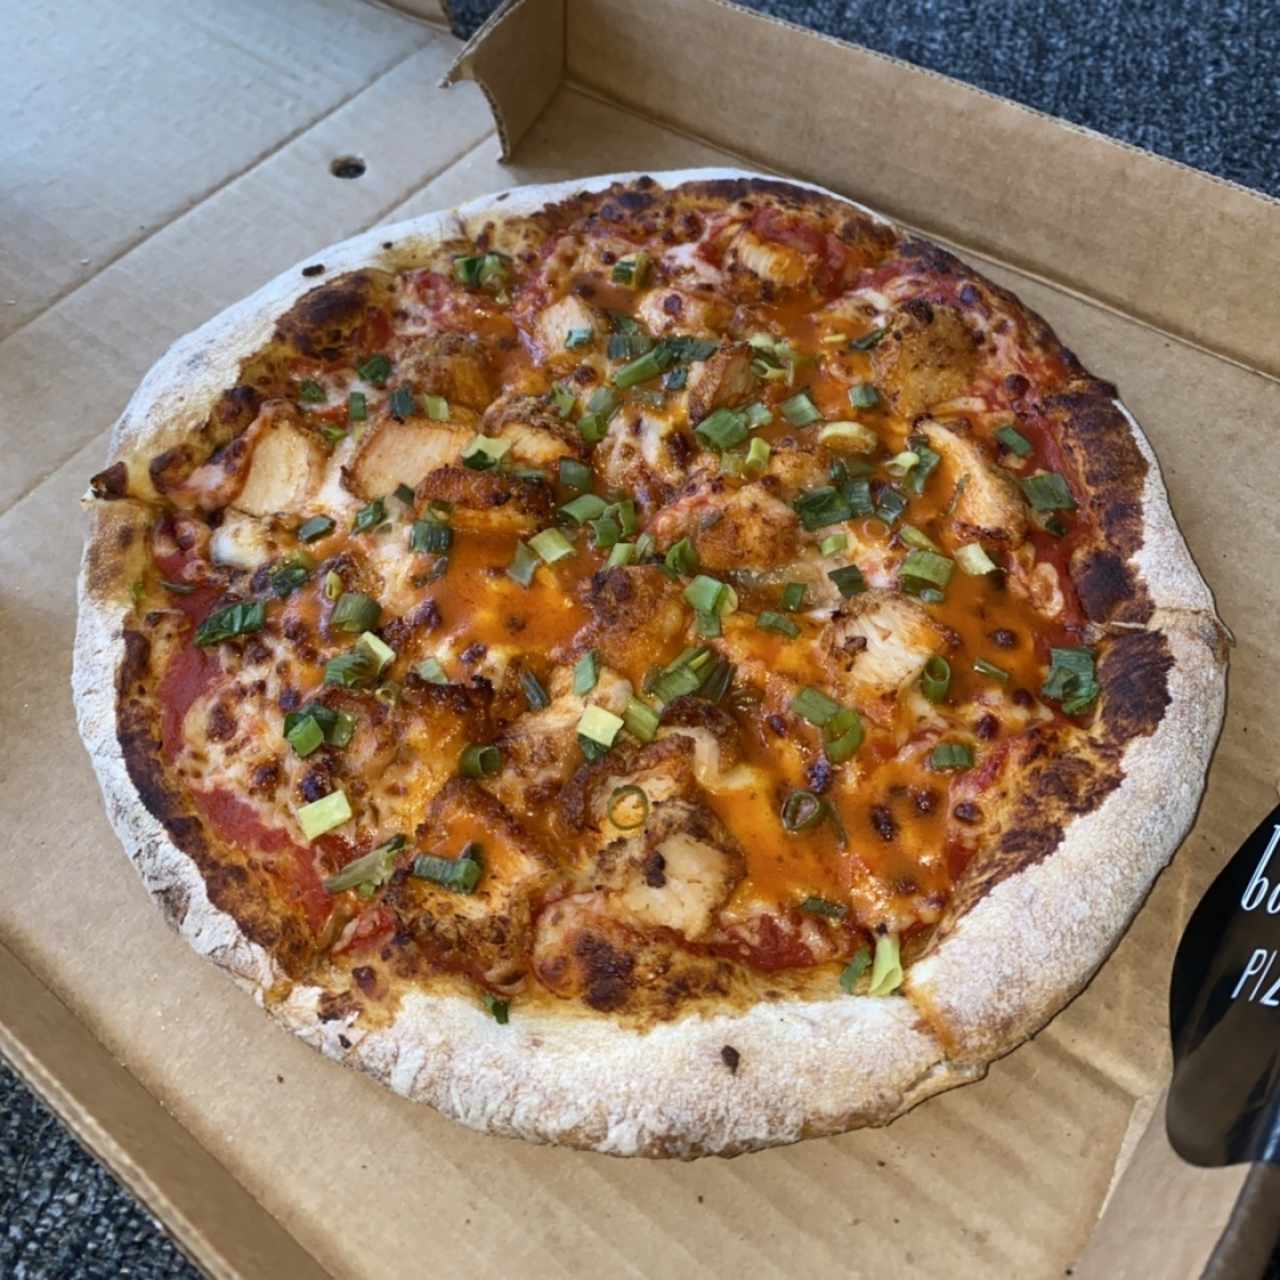 Pizzas 9" - Buffalo Chicken